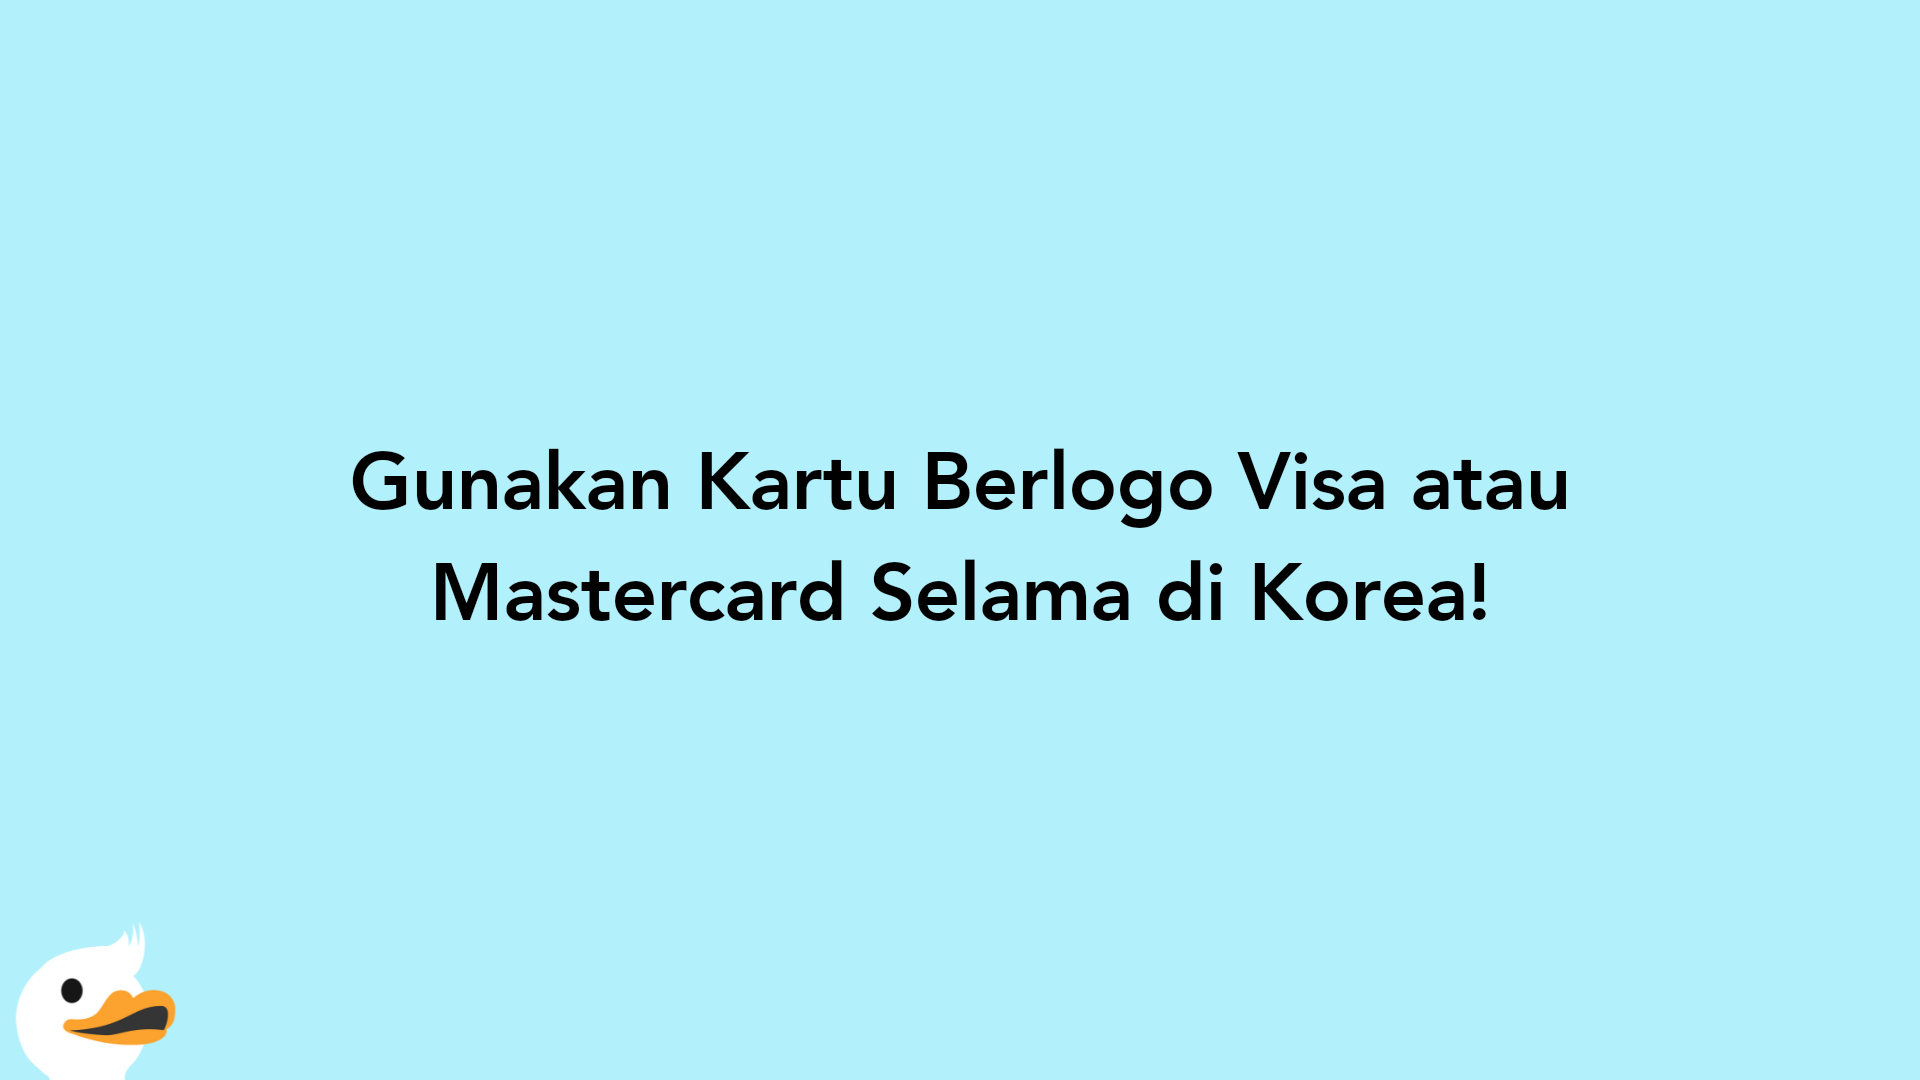 Gunakan Kartu Berlogo Visa atau Mastercard Selama di Korea!